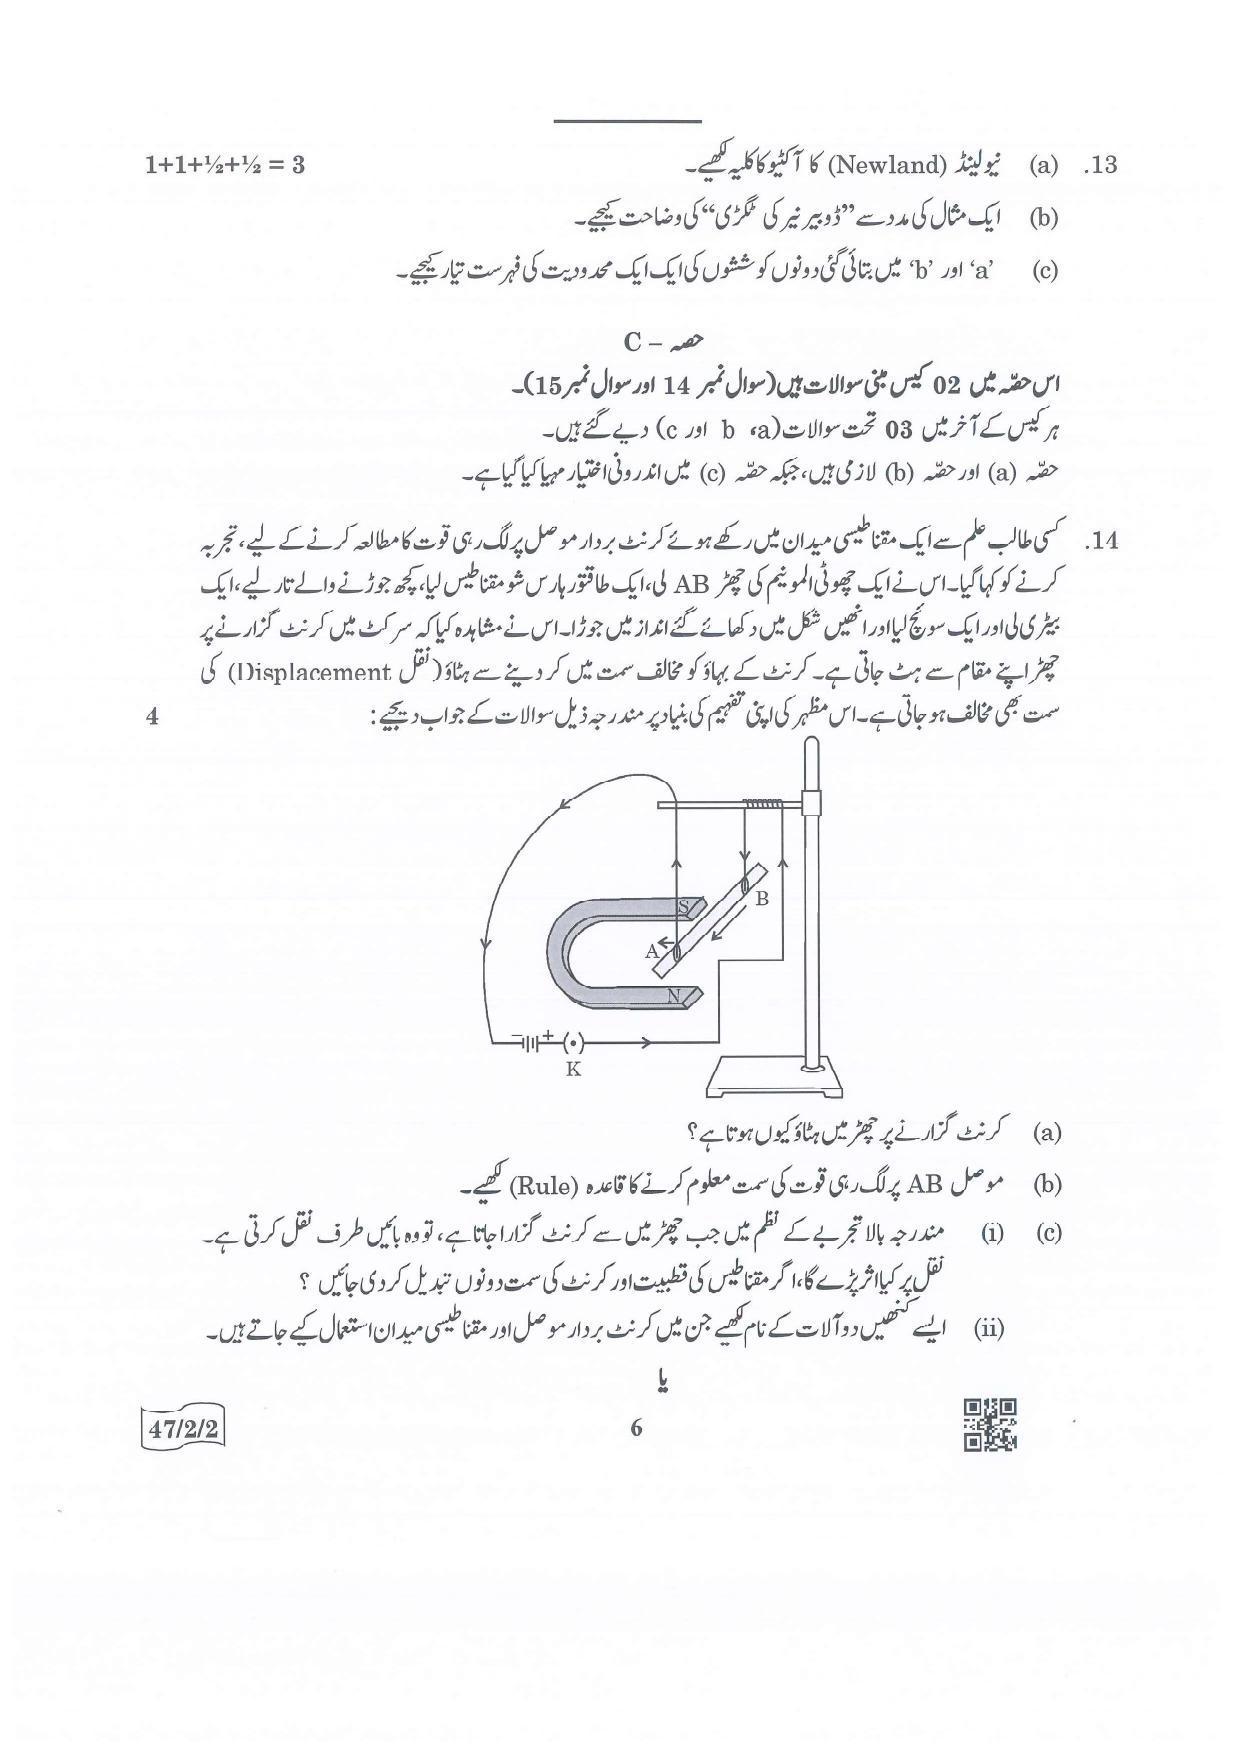 CBSE Class 10 47-2-2 Science Urdu Version.pdf 1 2022 Question Paper - Page 6